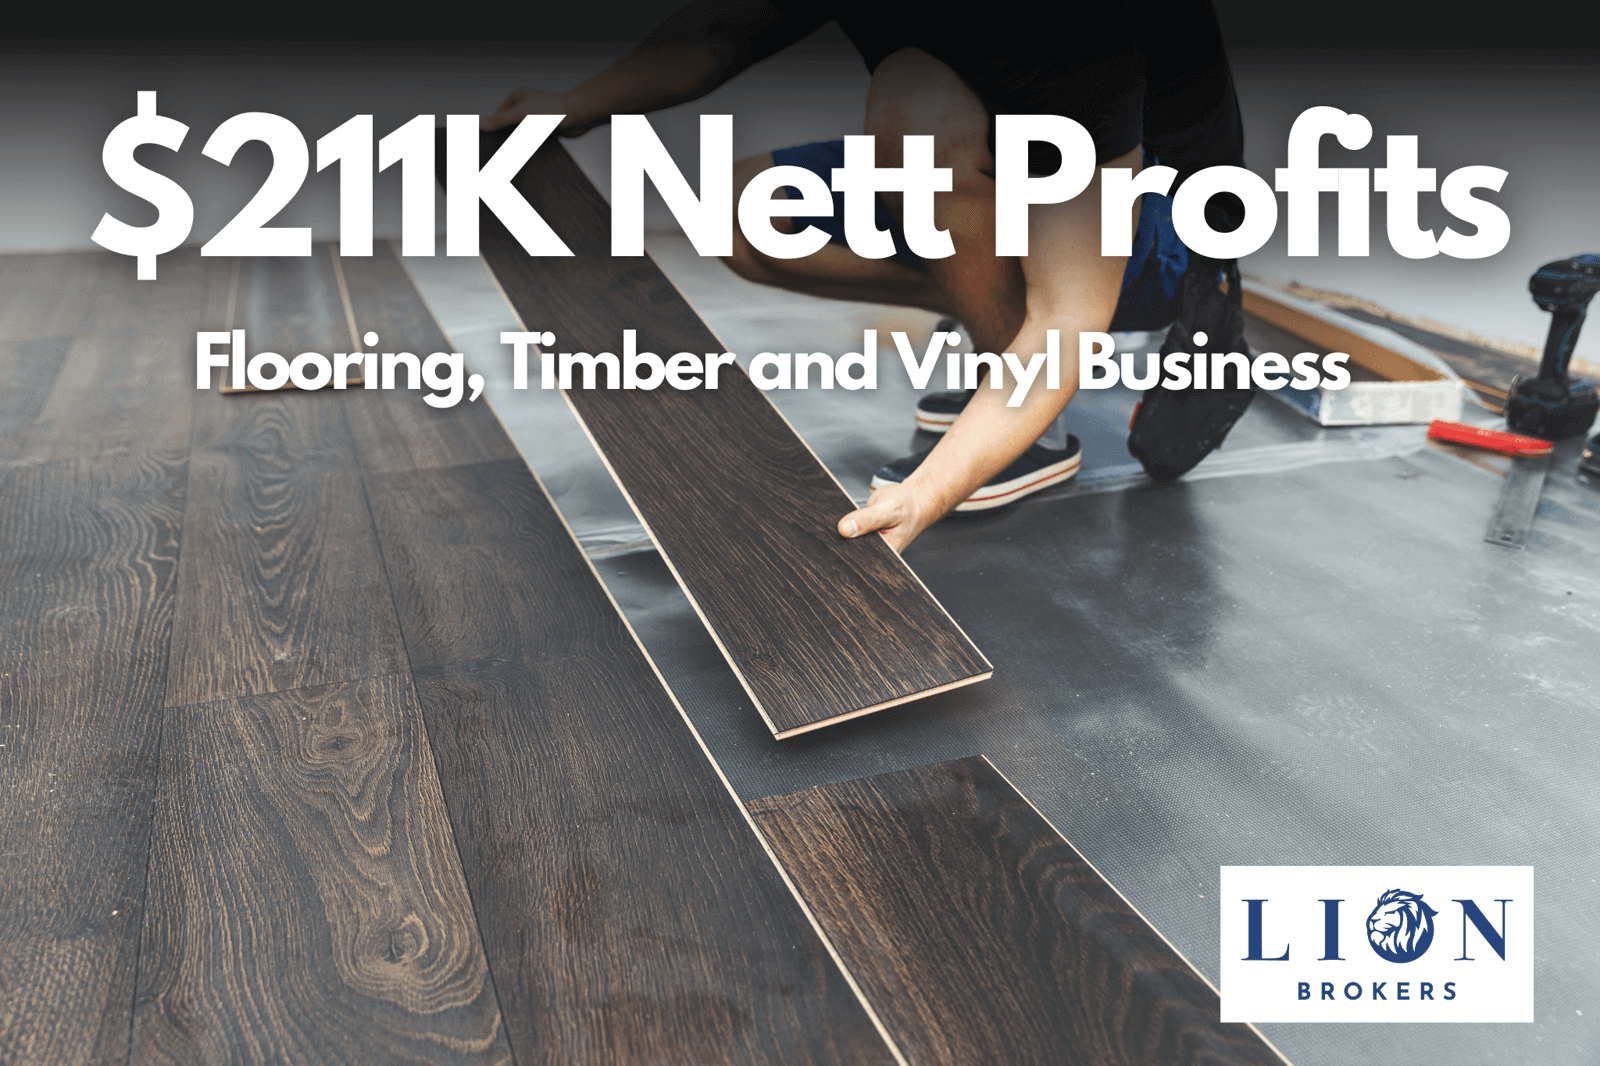 200K+ Nett Profits Flooring, Timber & Carpet Business For Sale